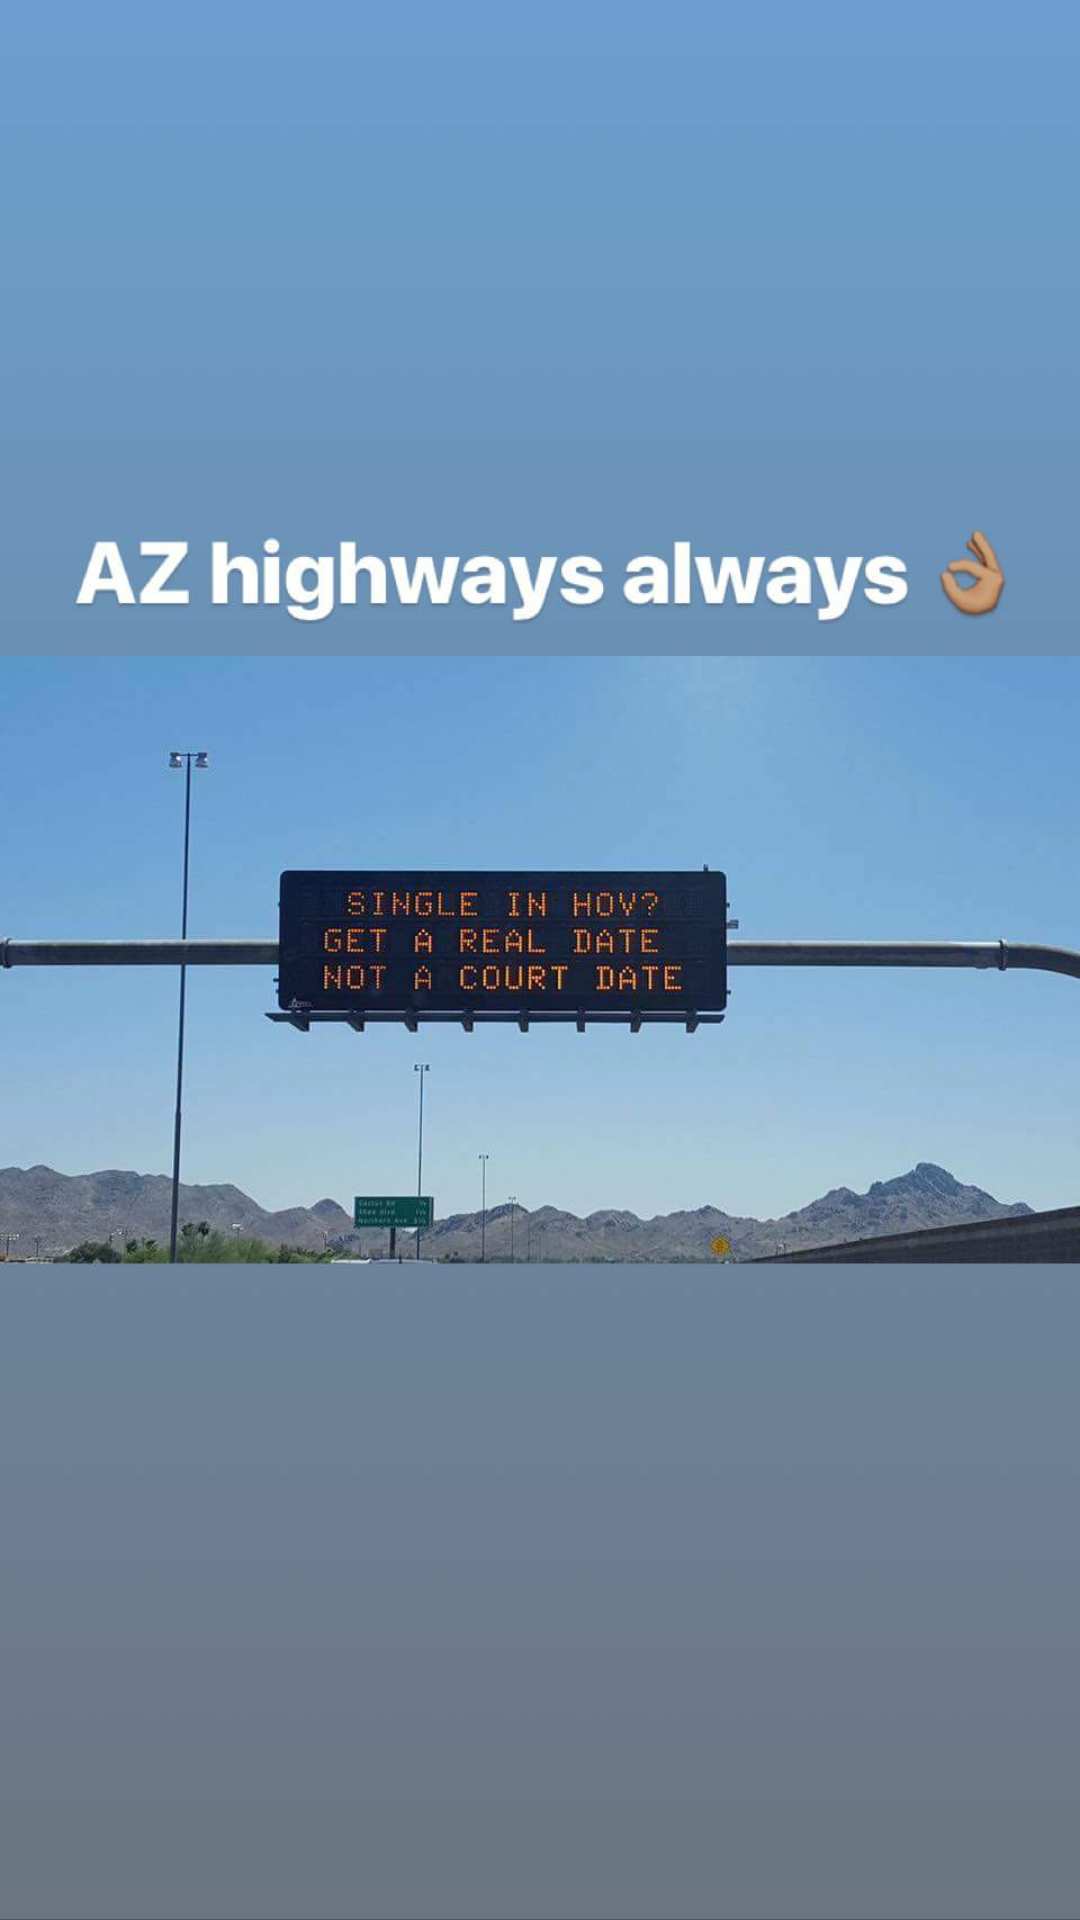 Arizona road signs back at it